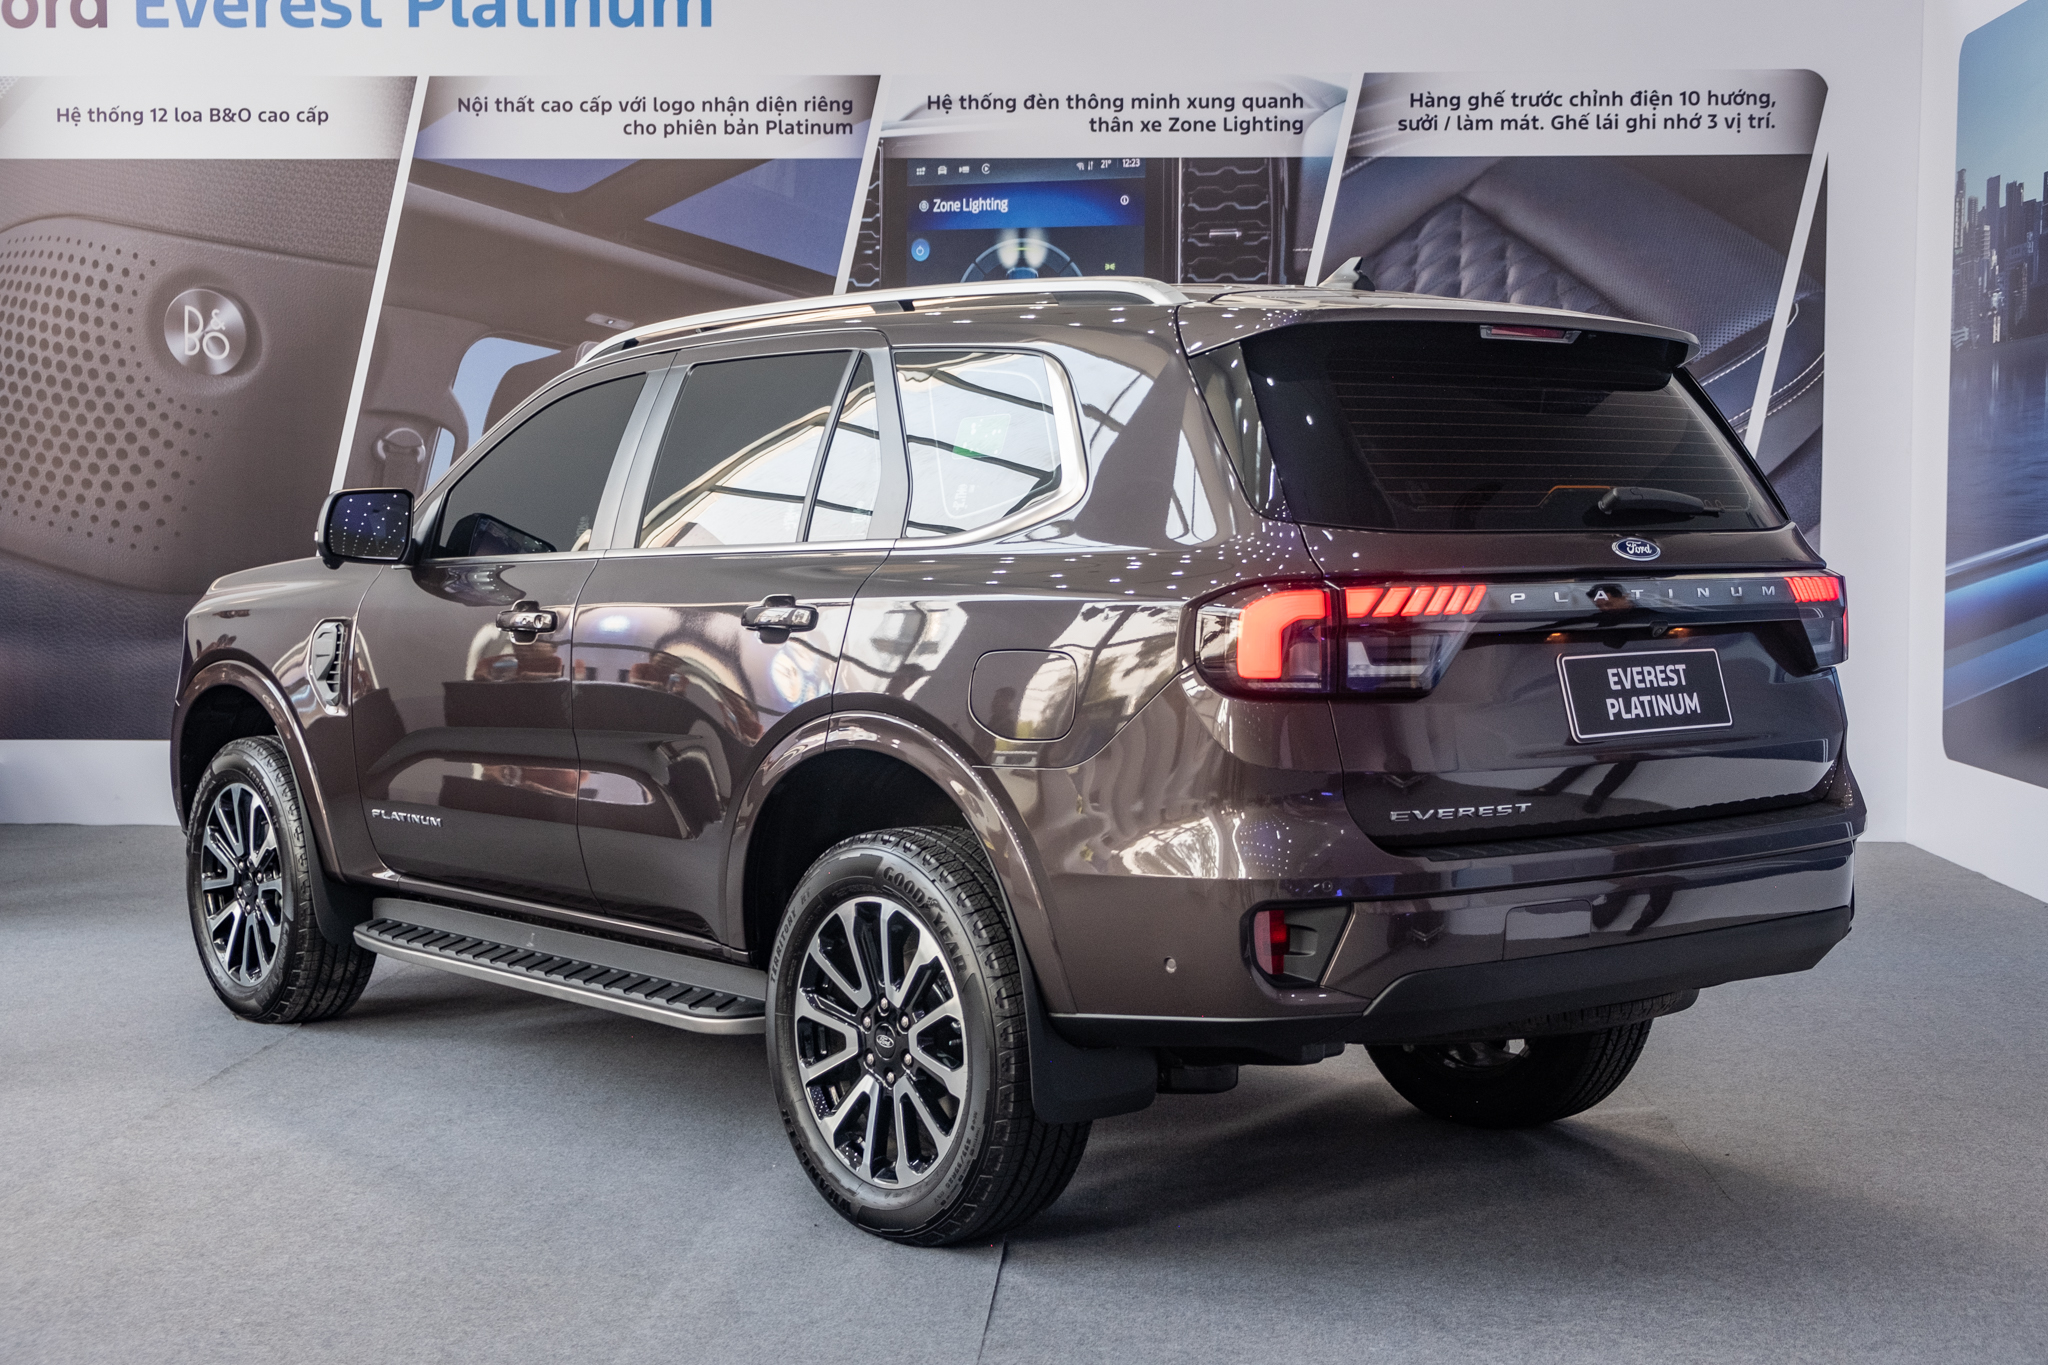 Chọn Ford Everest Titanium hay thêm 77 triệu lấy bản Platinum với nhiều tiện nghi cao cấp, bảng so sánh này sẽ giúp bạn dễ lựa chọn hơn - ảnh 3